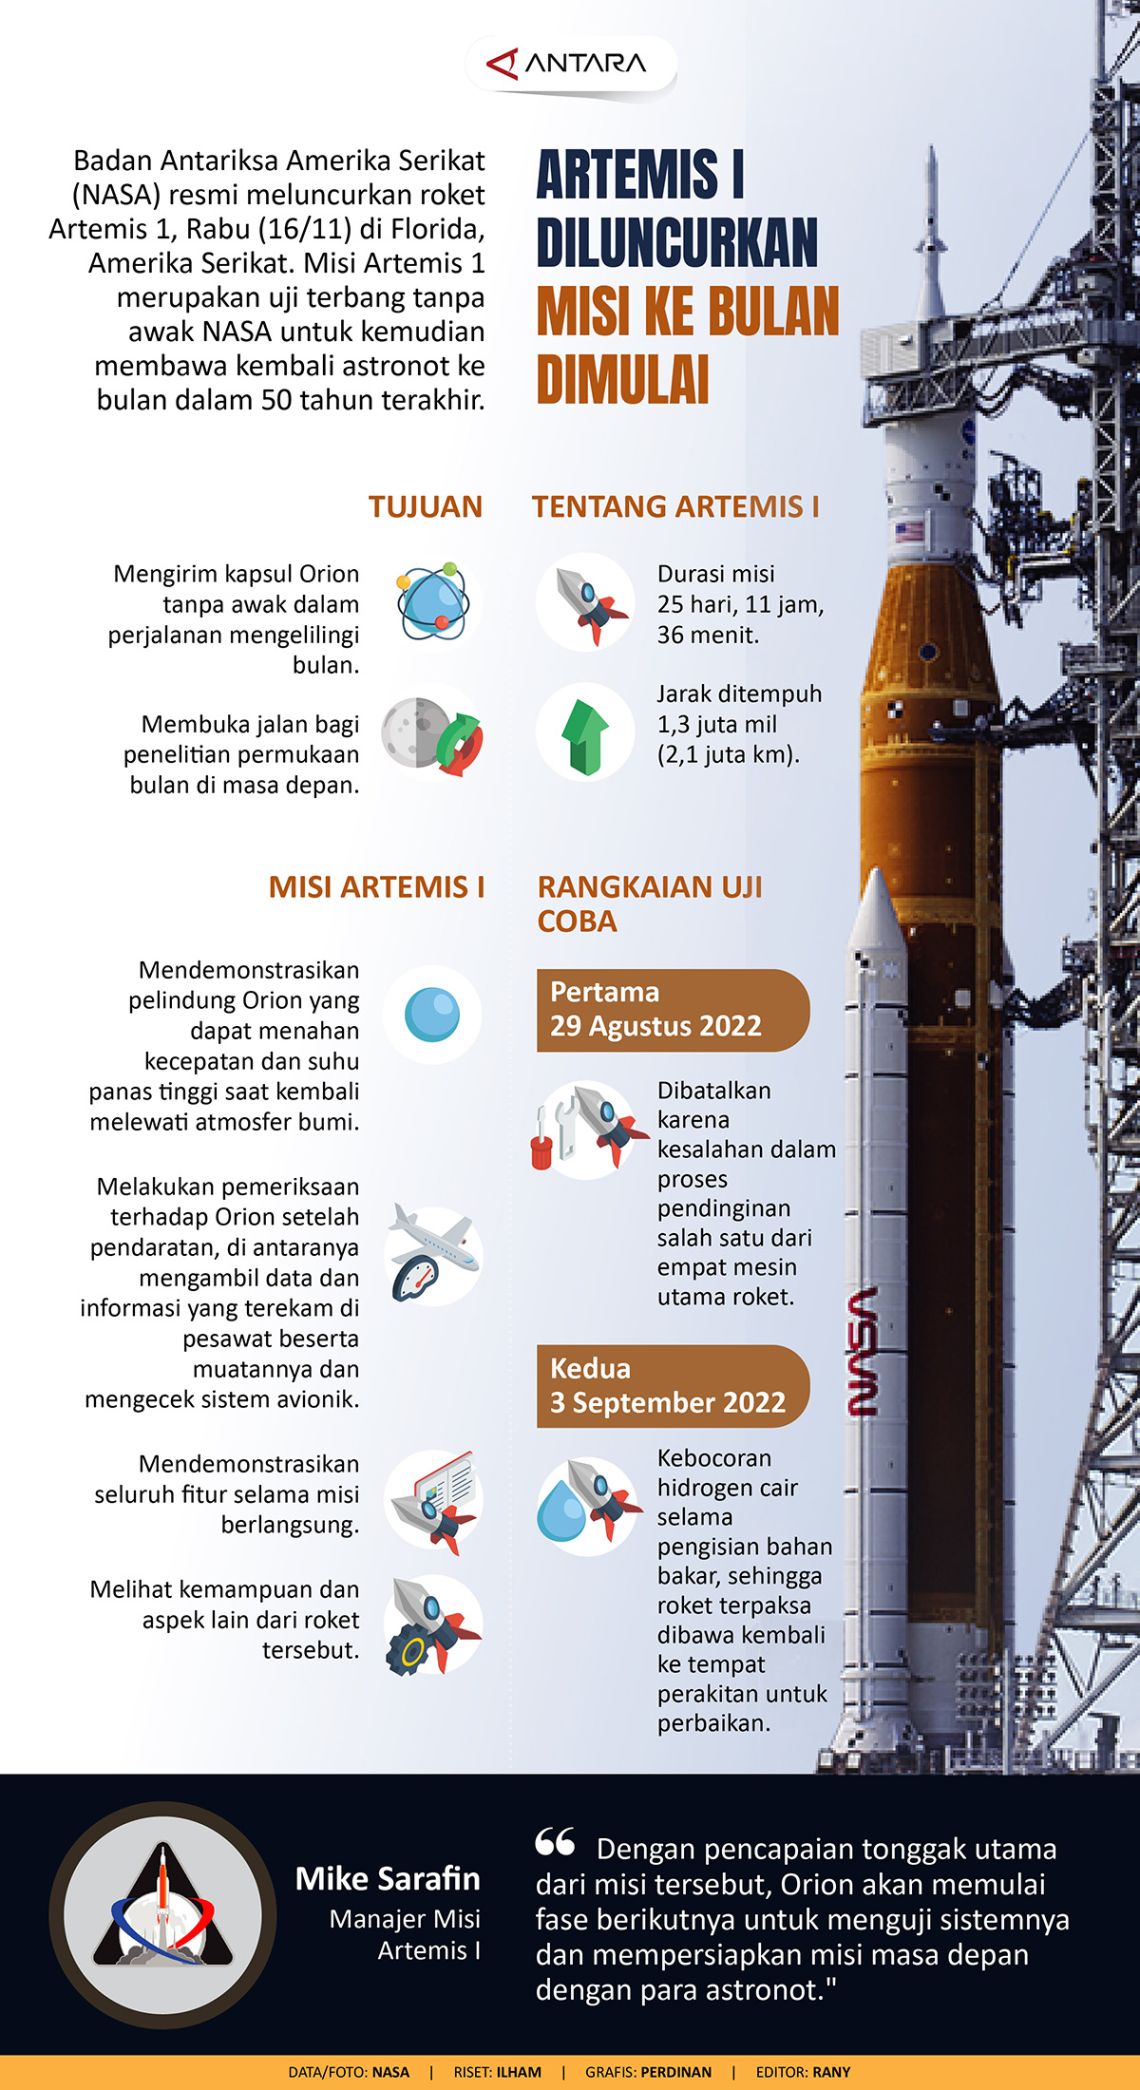 Artemis 1 diluncurkan, misi ke bulan dimulai